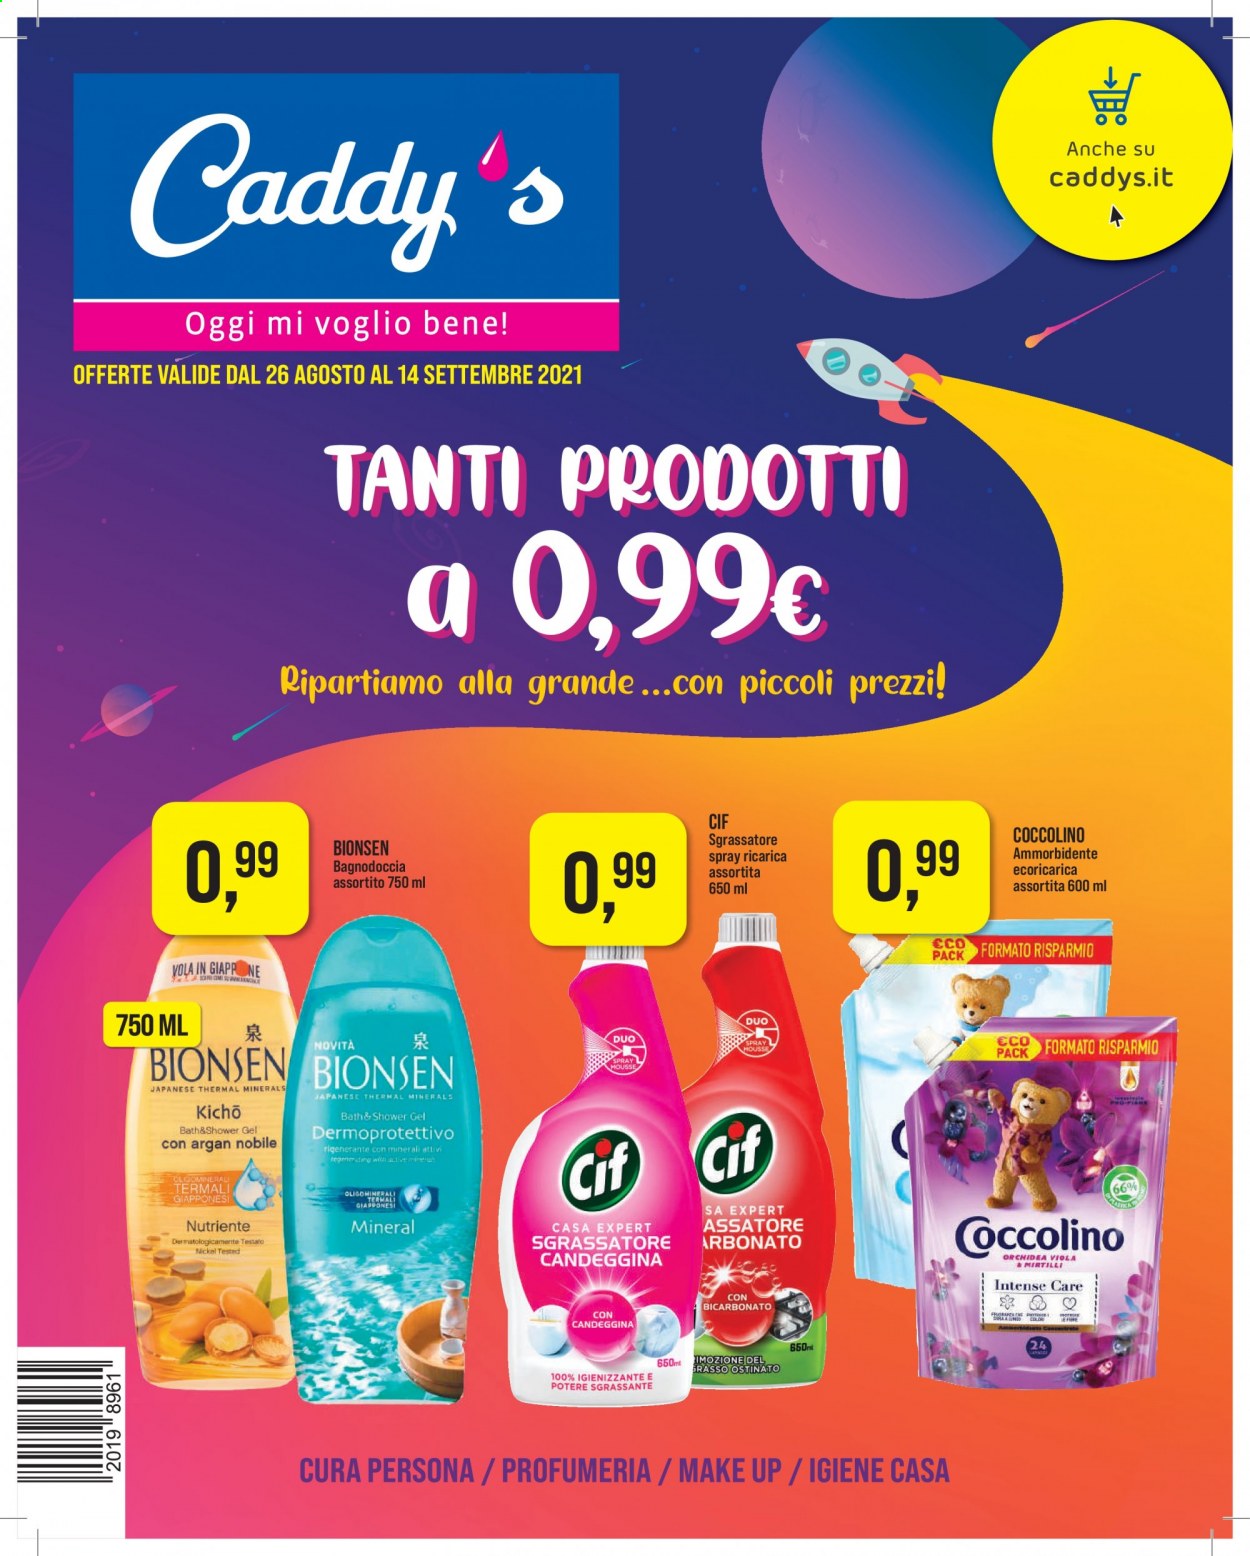 thumbnail - Volantino Caddy's - 26/8/2021 - 14/9/2021 - Prodotti in offerta - Cif, sgrassatore, igienizzante, ammorbidente, Coccolino, gel doccia, argan. Pagina 1.